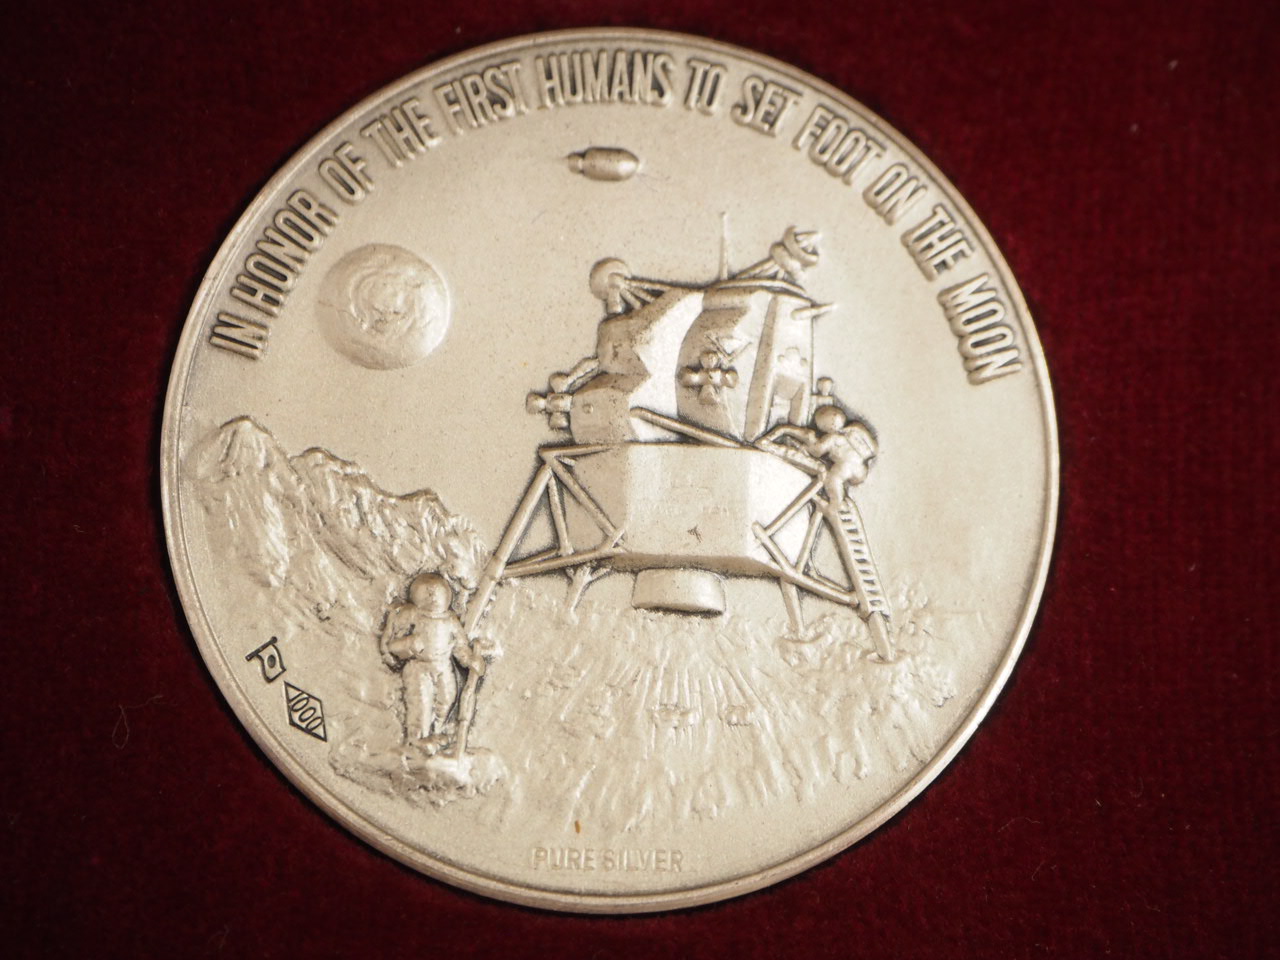 純銀製 アポロ11号 月着陸記念メダル SV1000 約36.2g 直径40mm